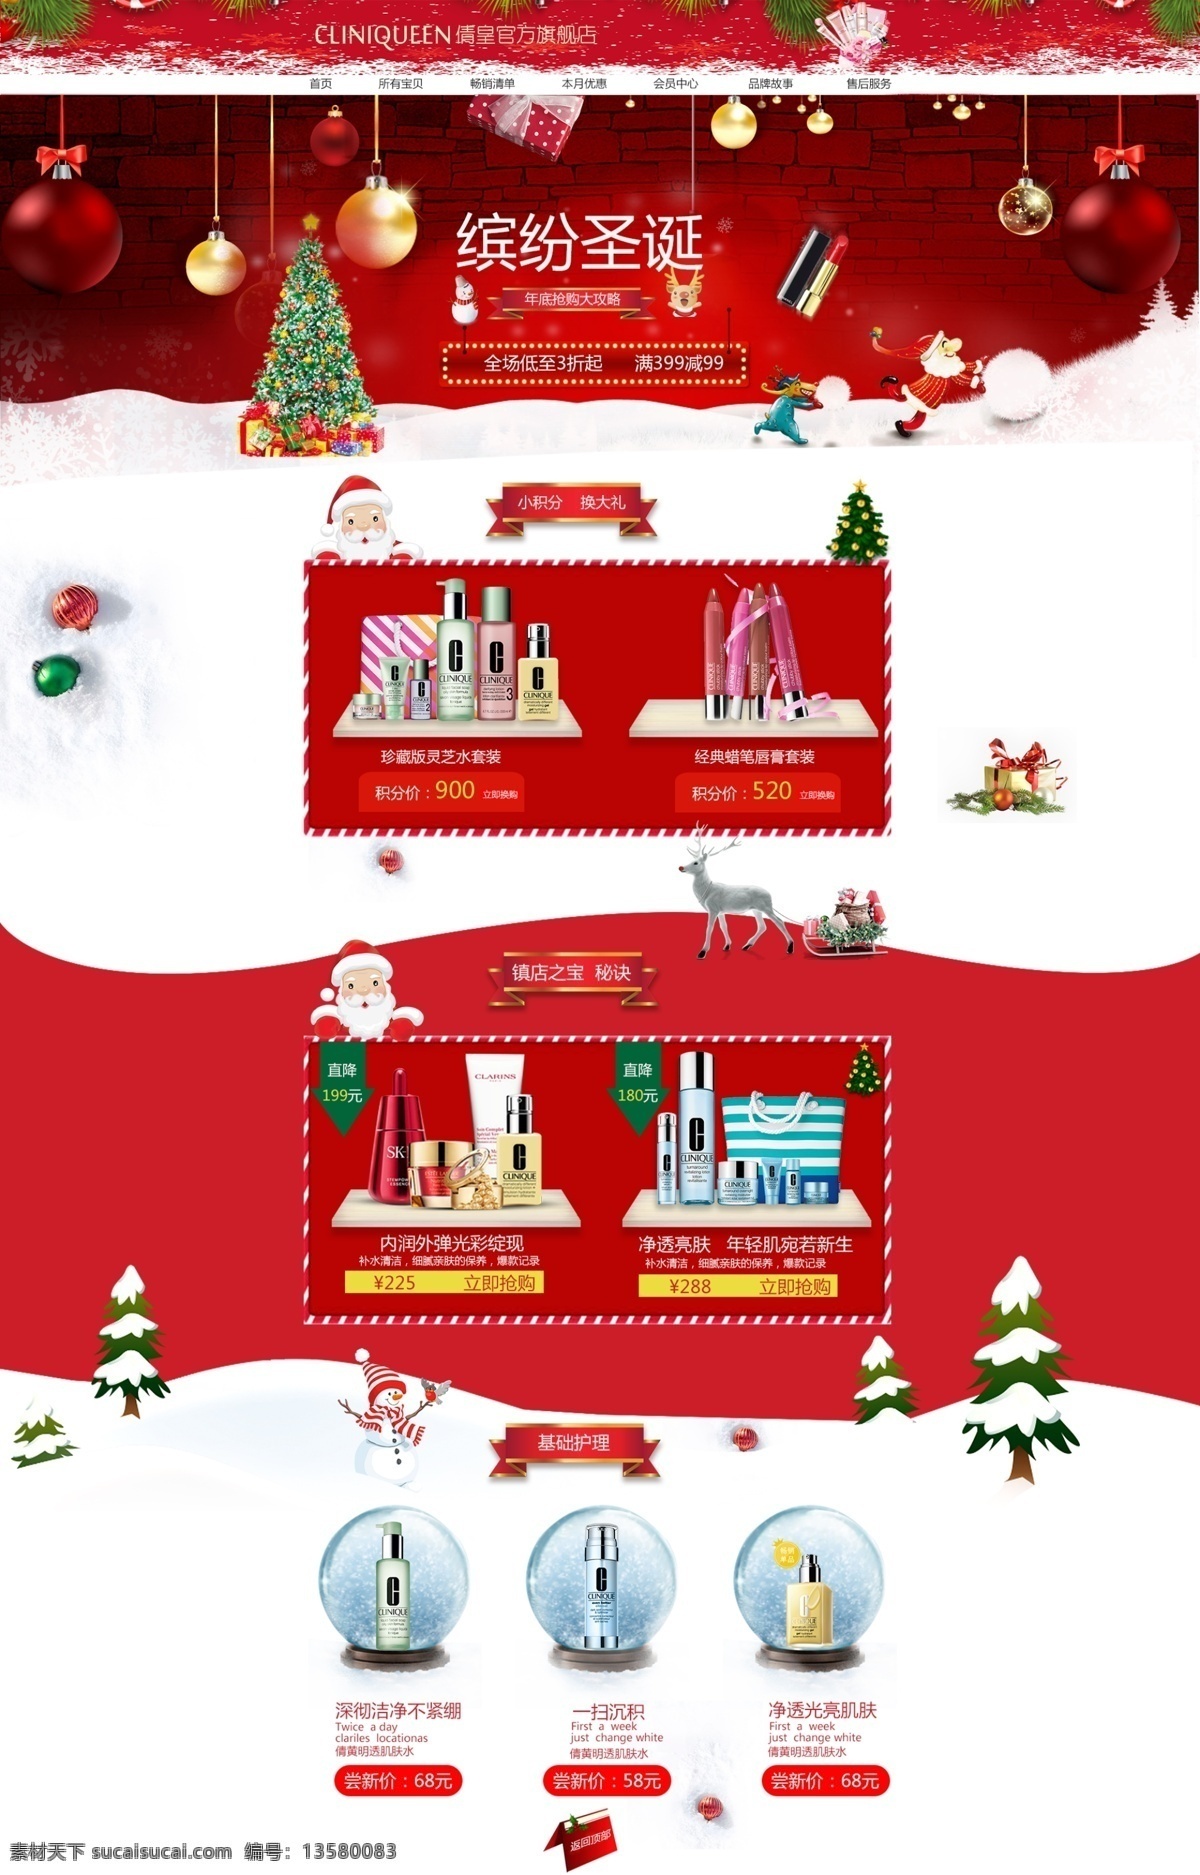 圣诞节 氛围 宣传 专题 页 圣诞老人 麋鹿 节日氛围 红色专题 高端大气 护肤品 化妆品 淘宝界面设计